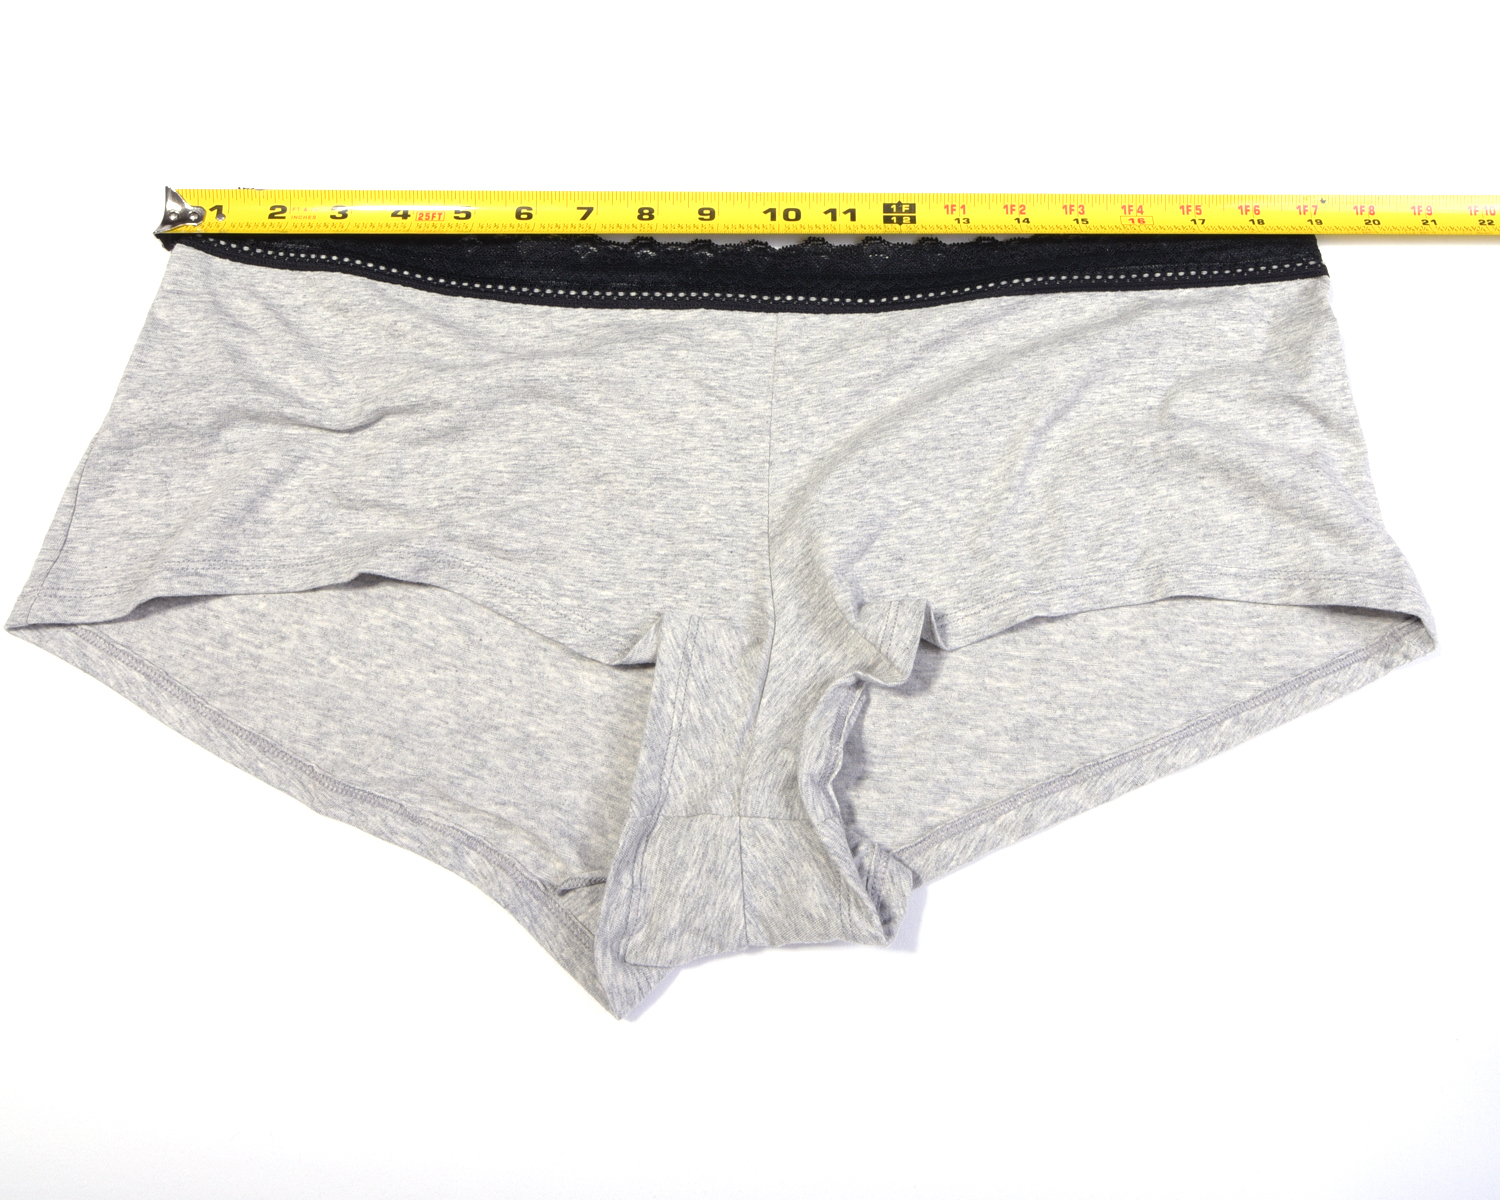 size 22 underwear